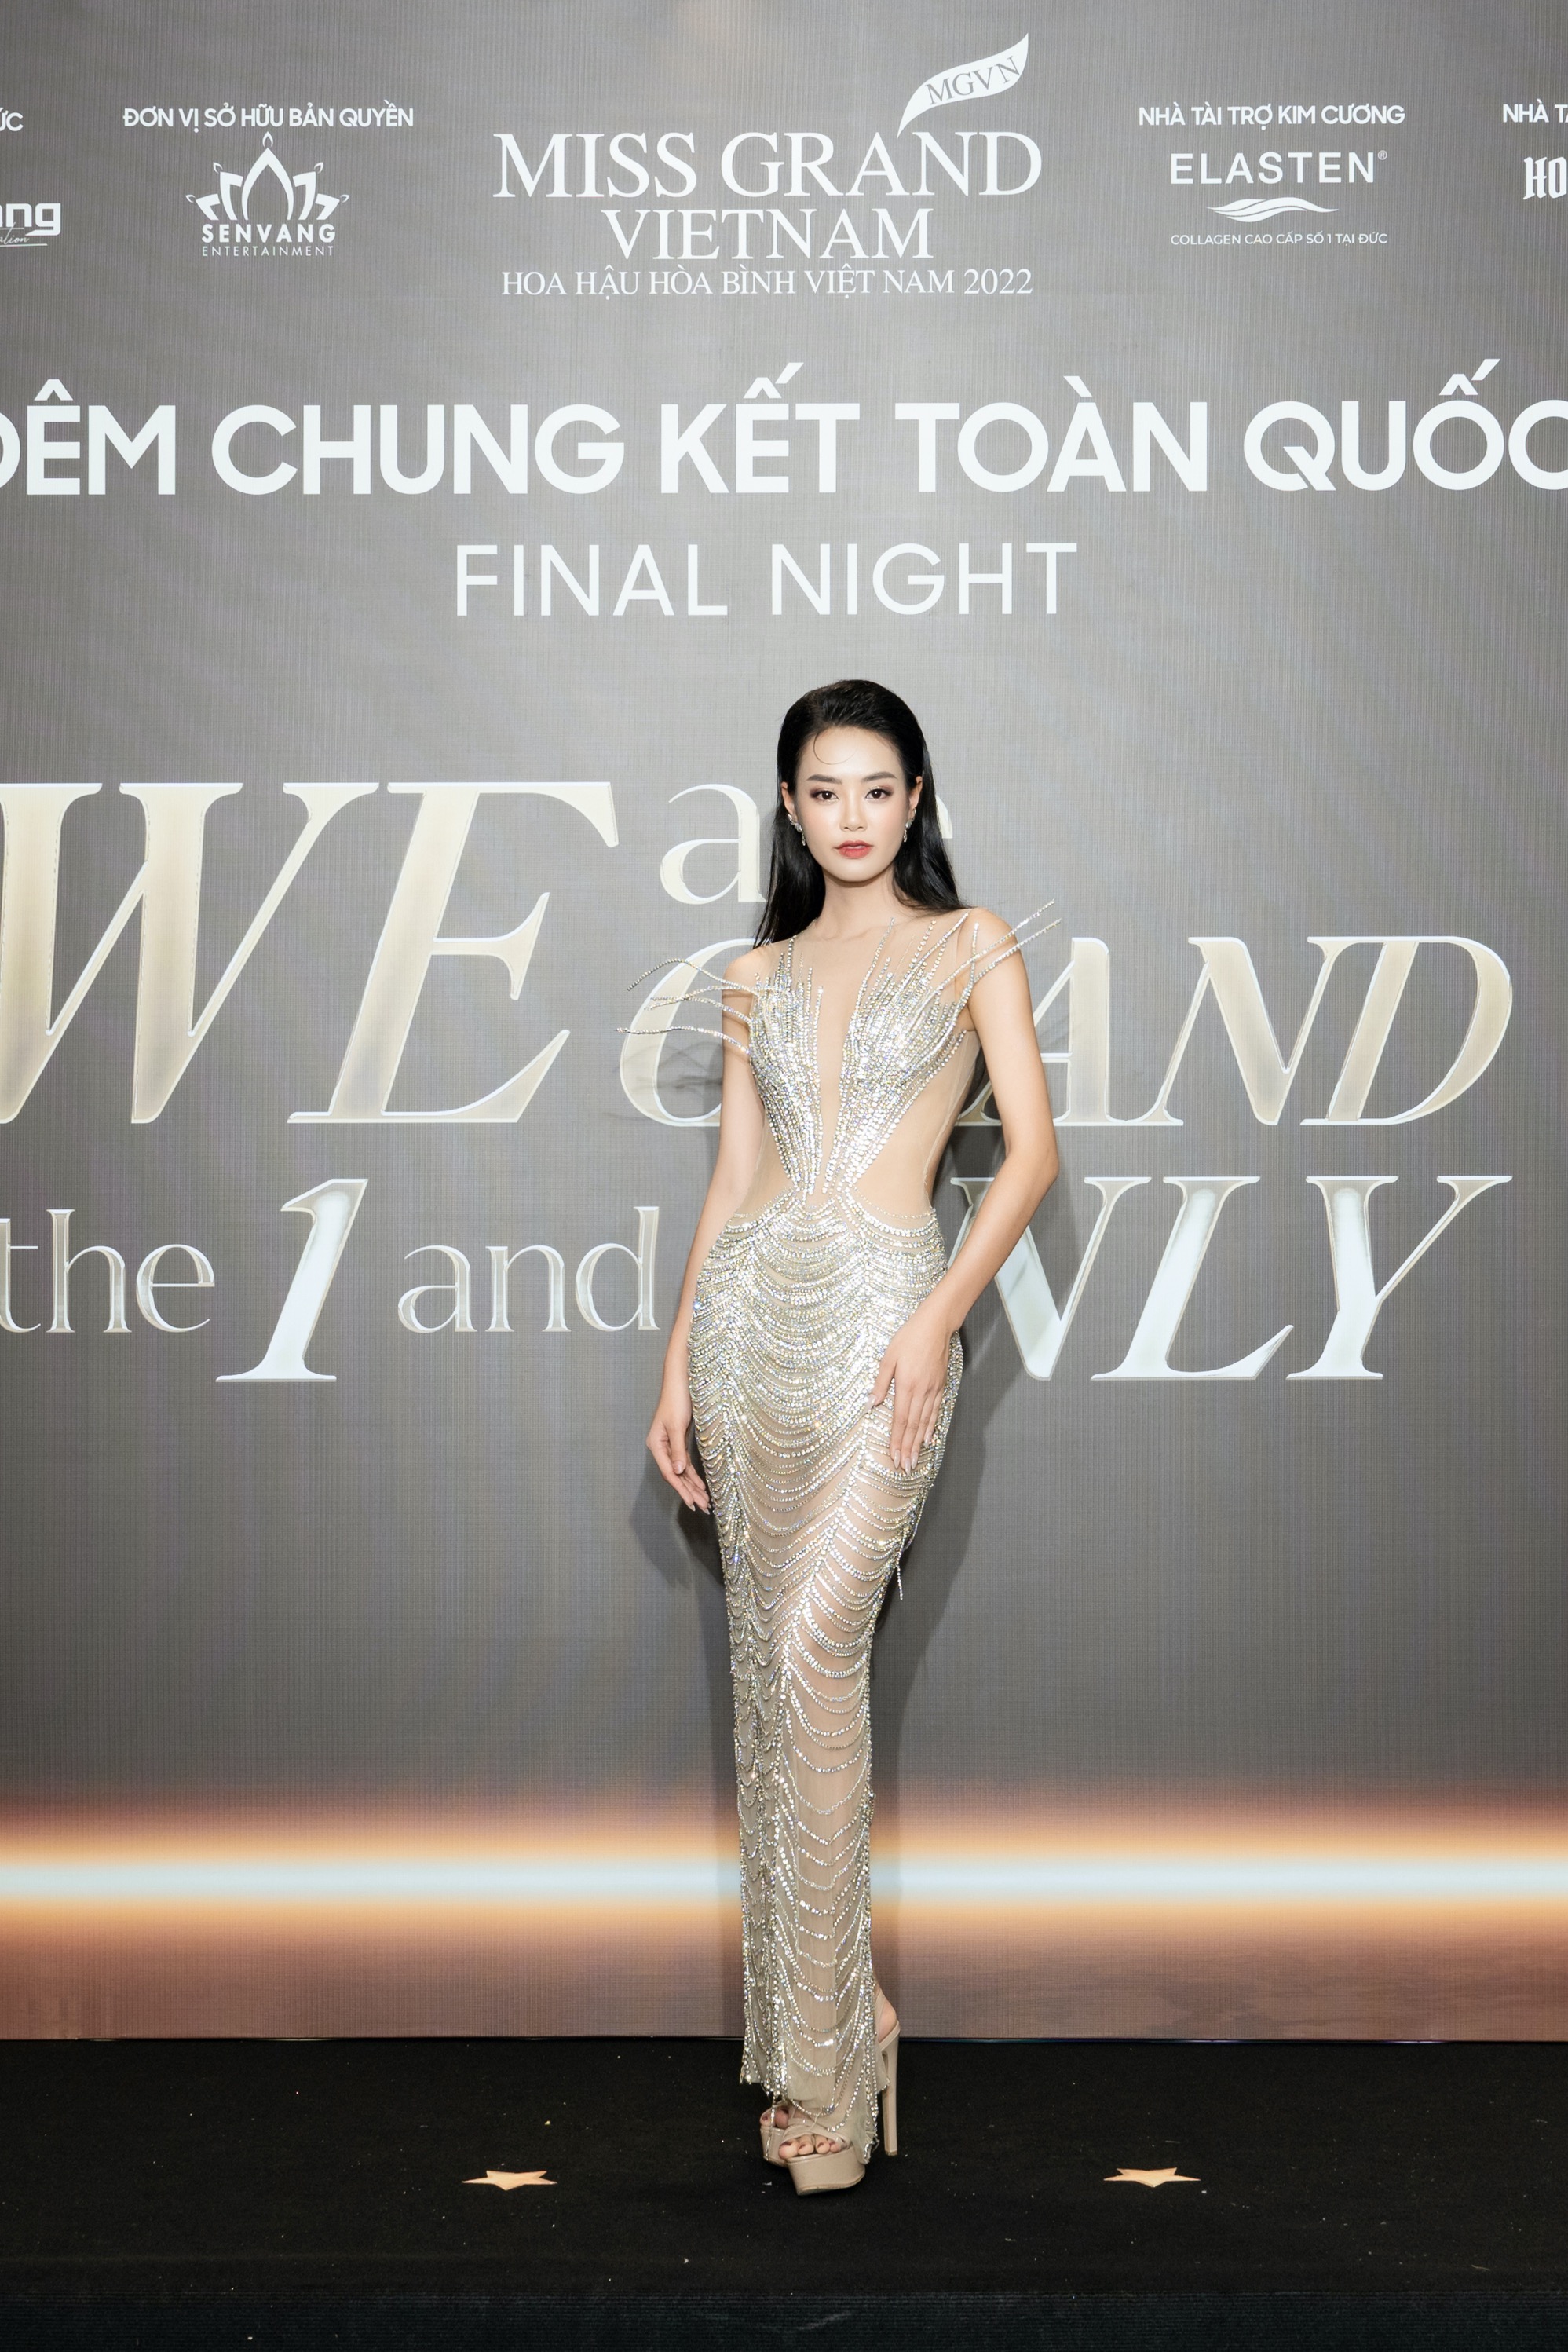 Thùy Tiên, Phương Nhi đội vương miện, rạng rỡ trên thảm đỏ chung kết Miss Grand Vietnam 2022-7